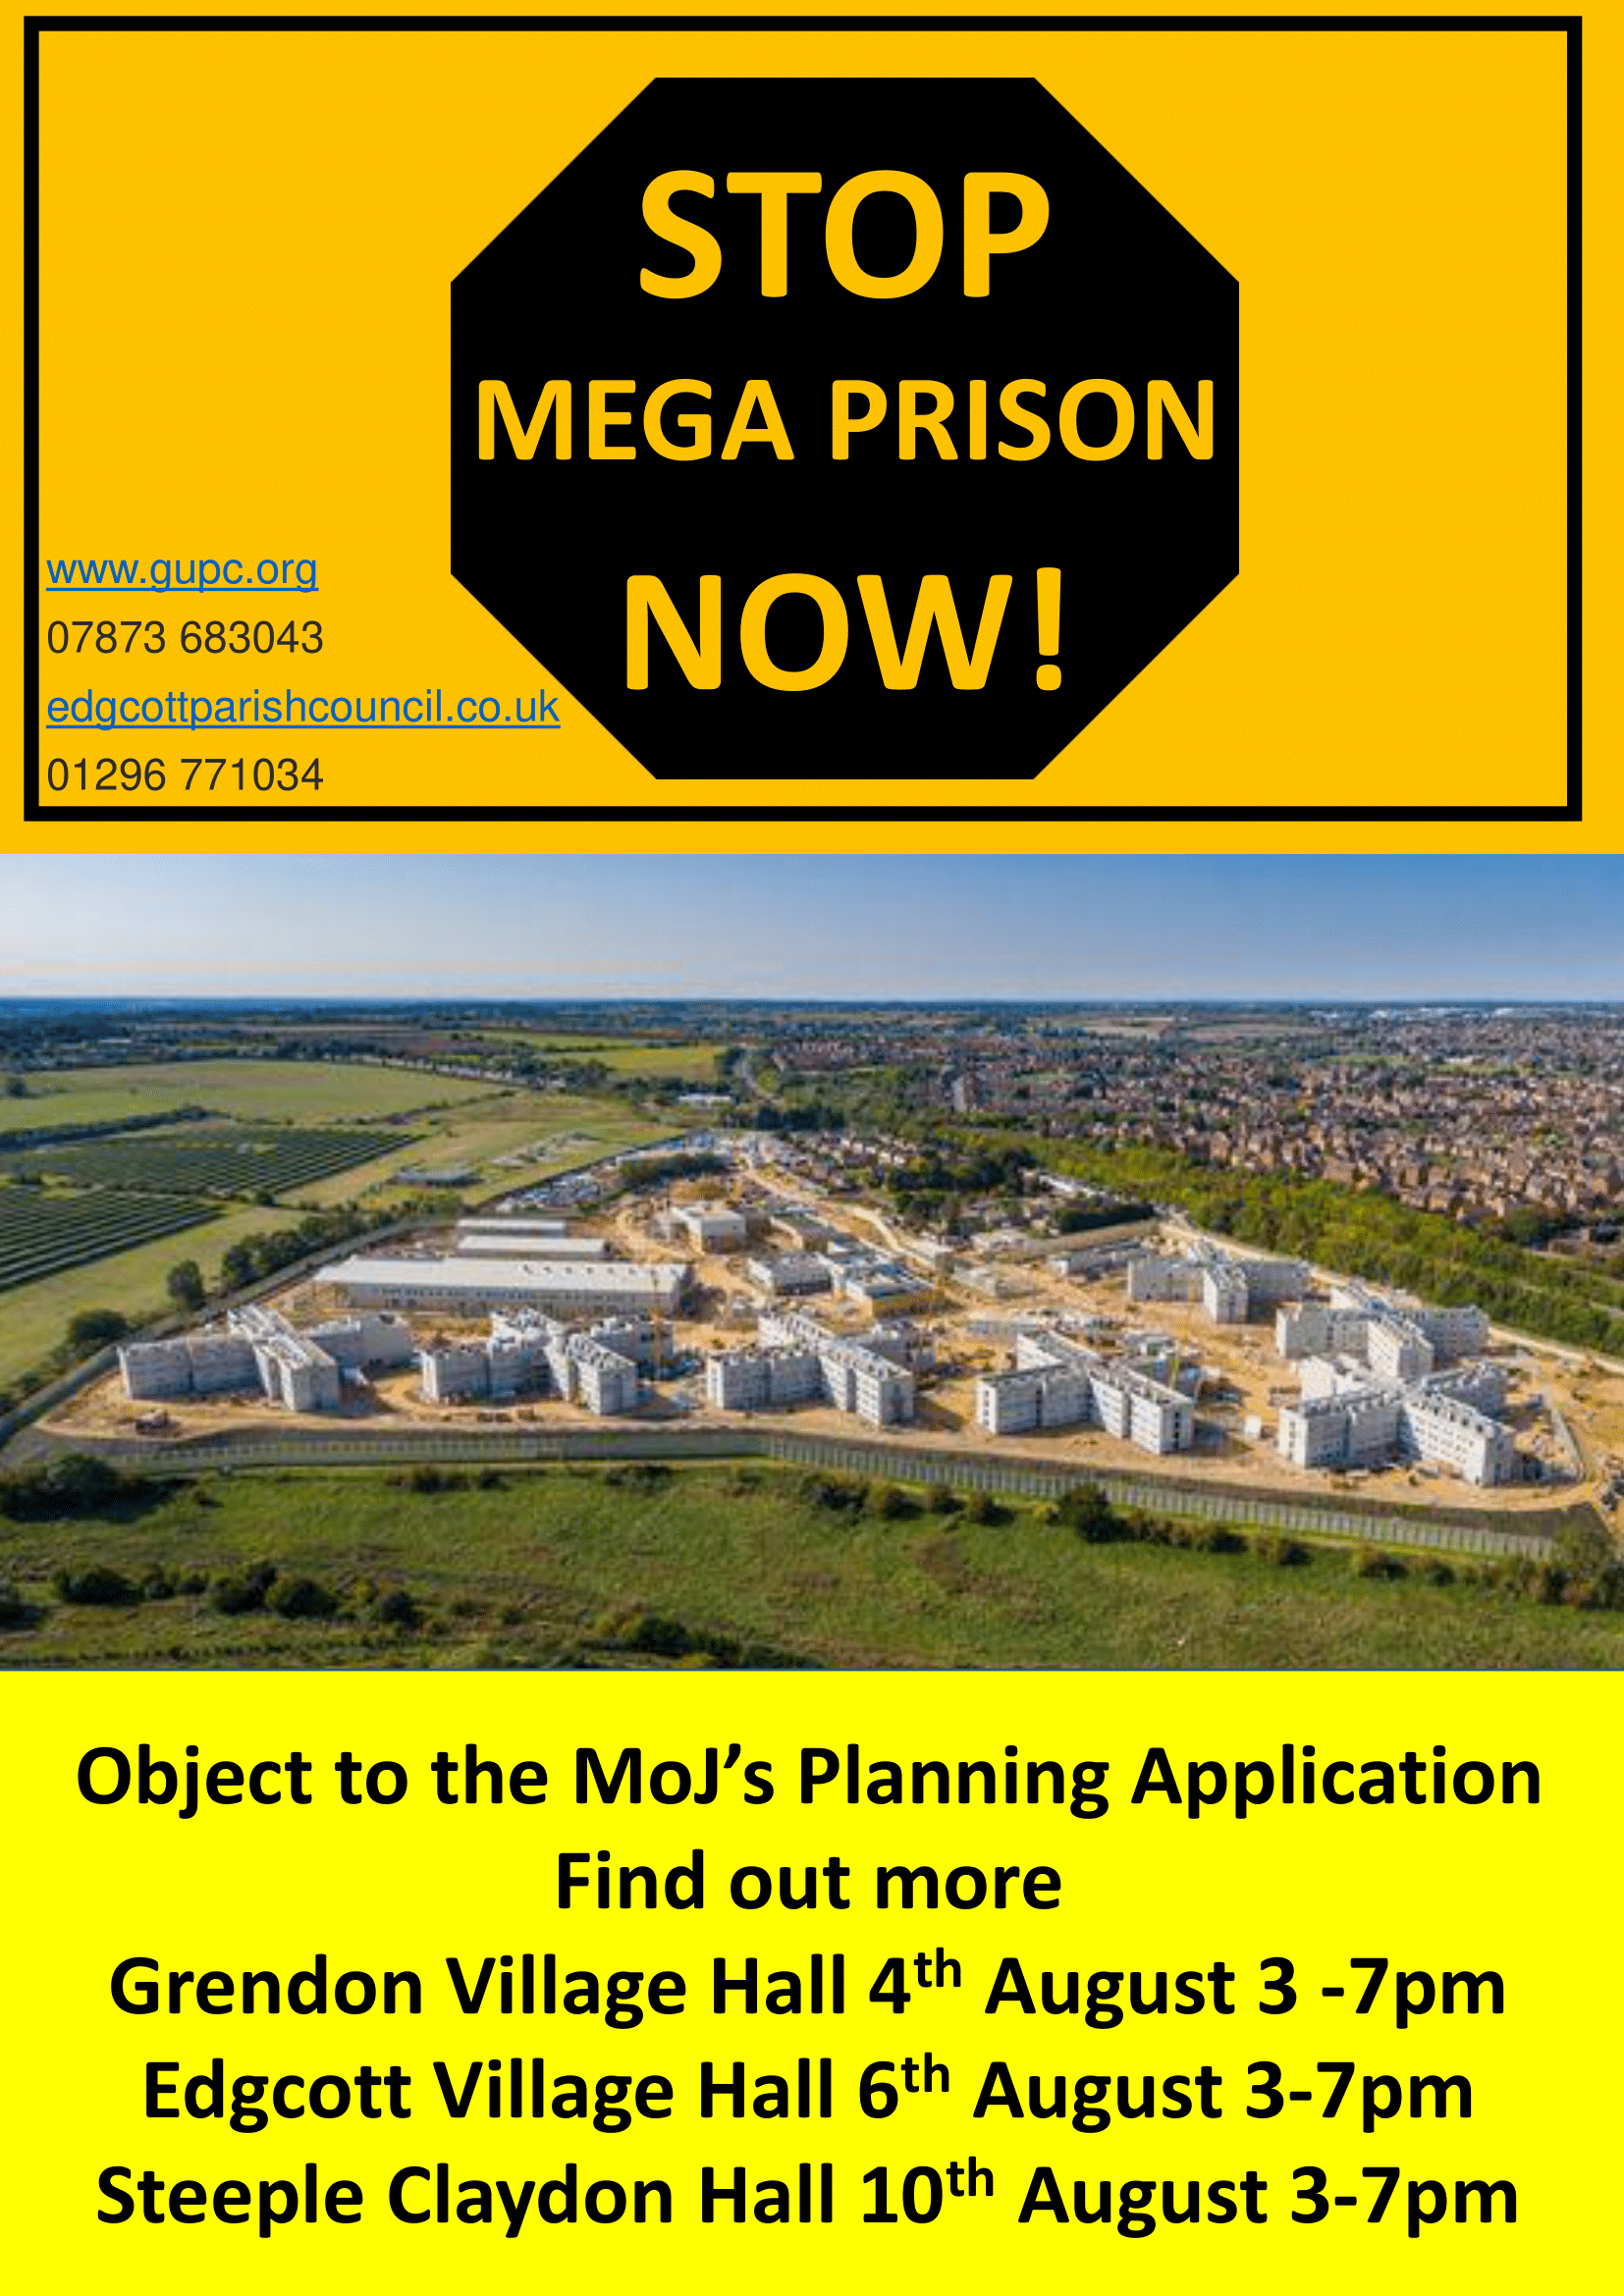 Public information on Mega Prison